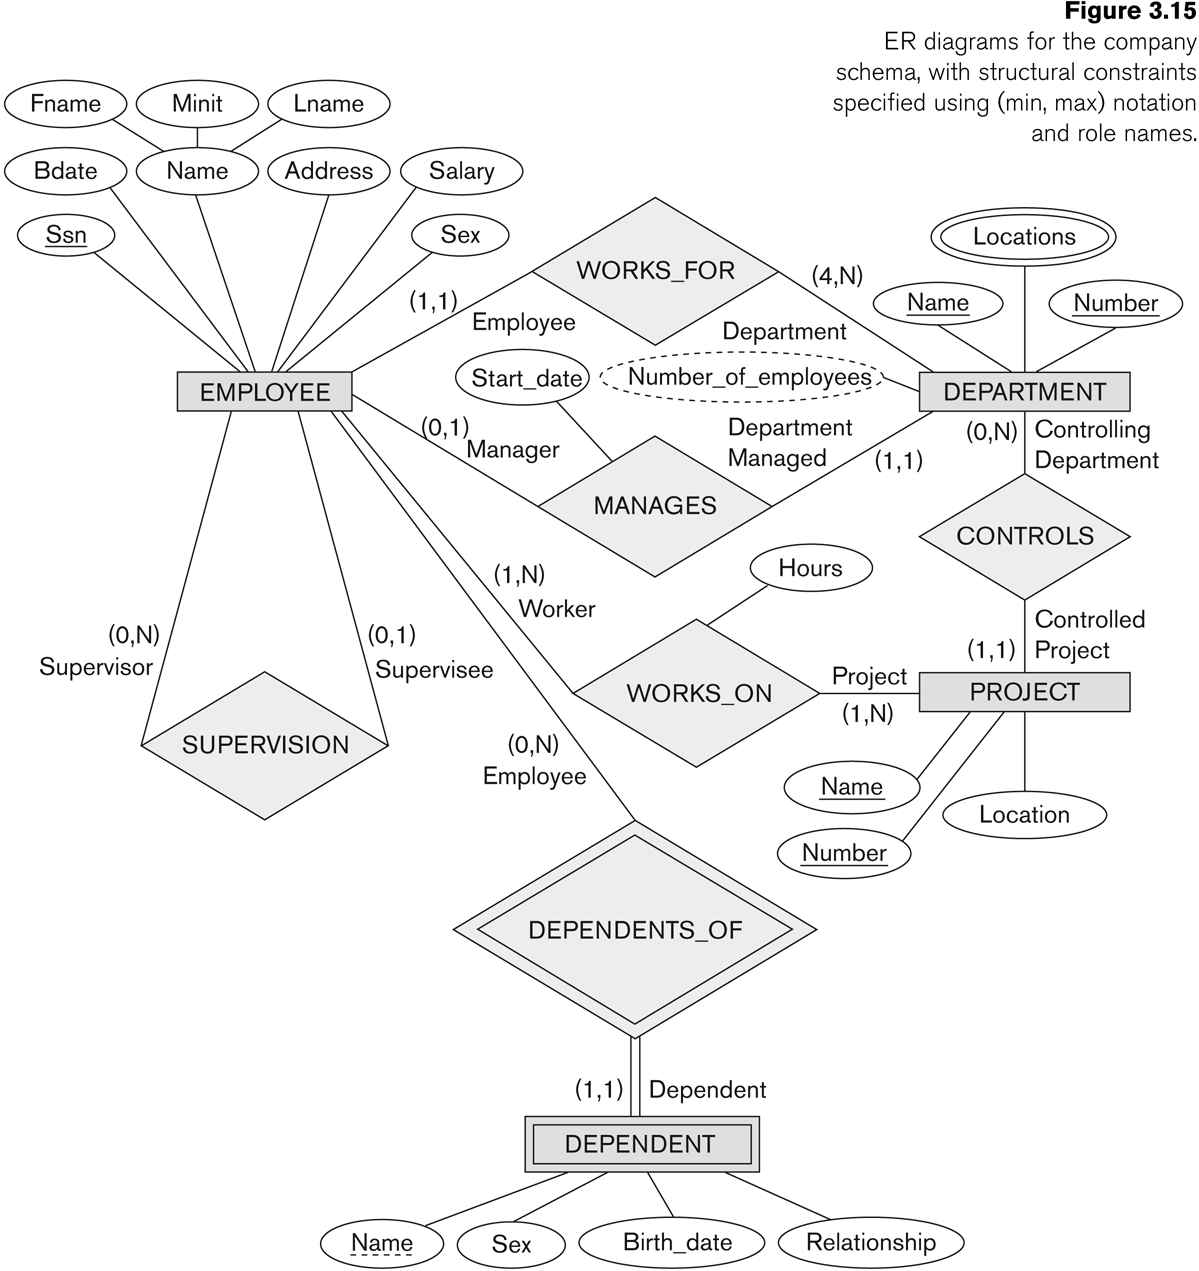 Entity-Relationship Modeling in Er Diagram Rules